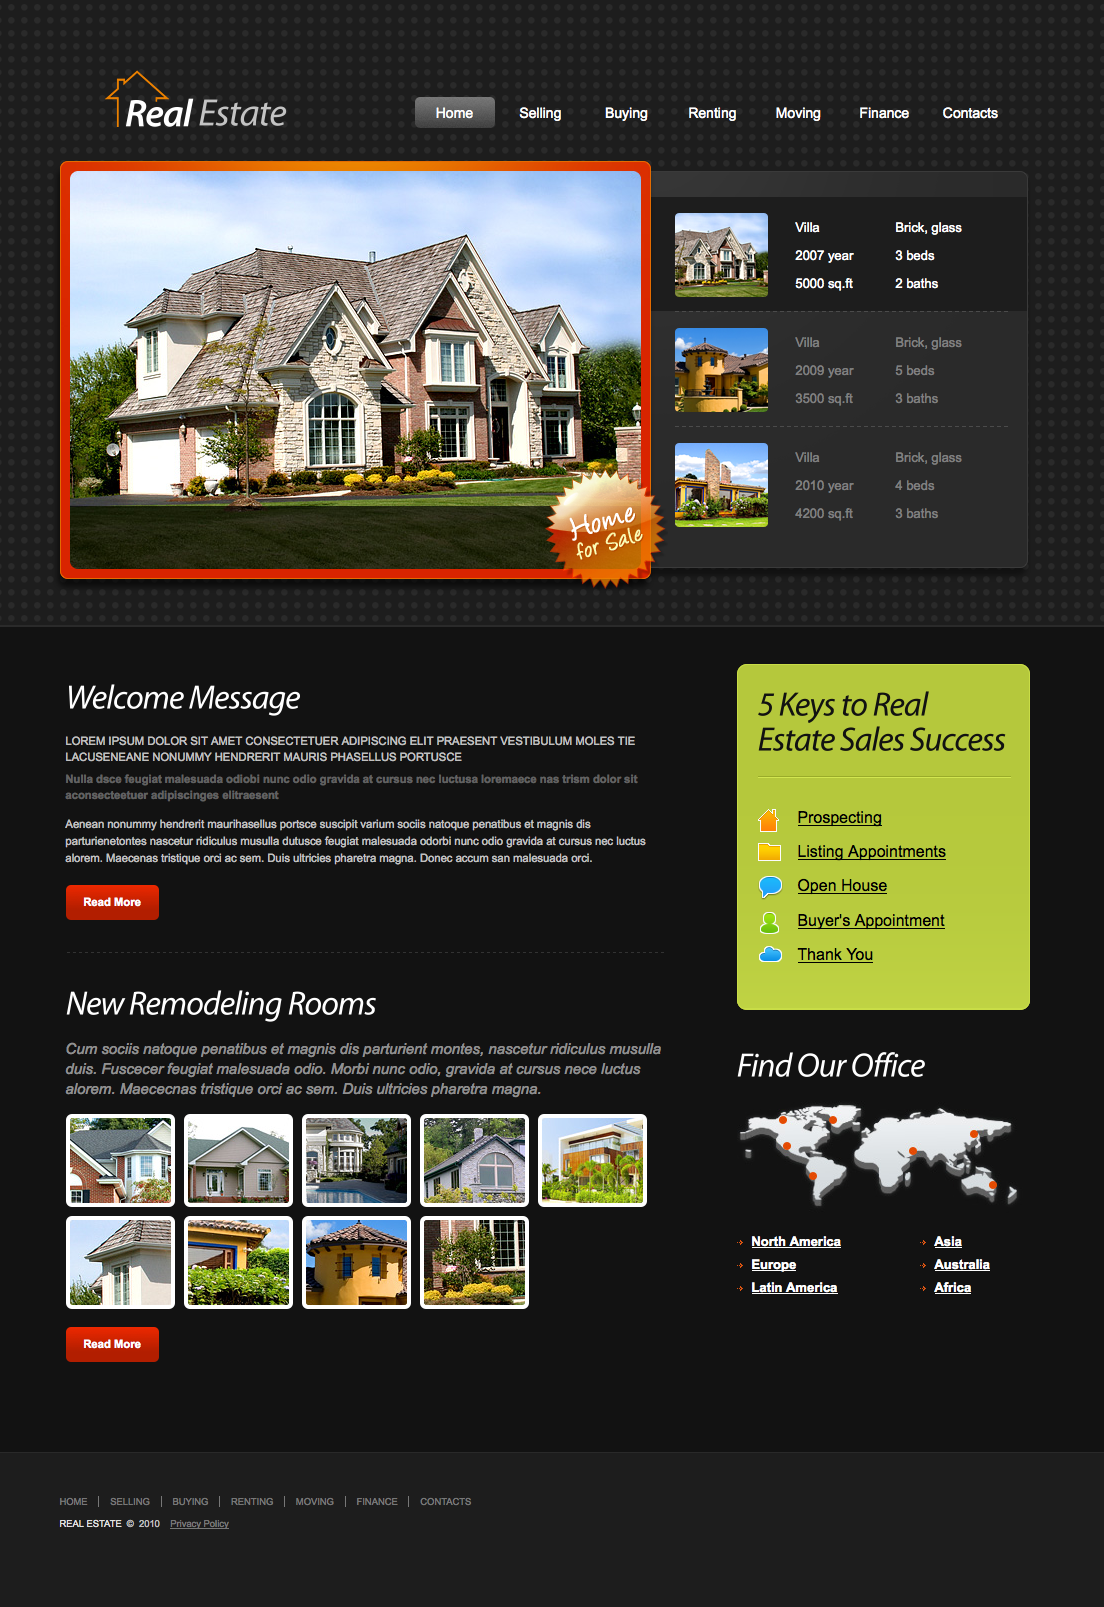 免费房产租售企业网站html模板